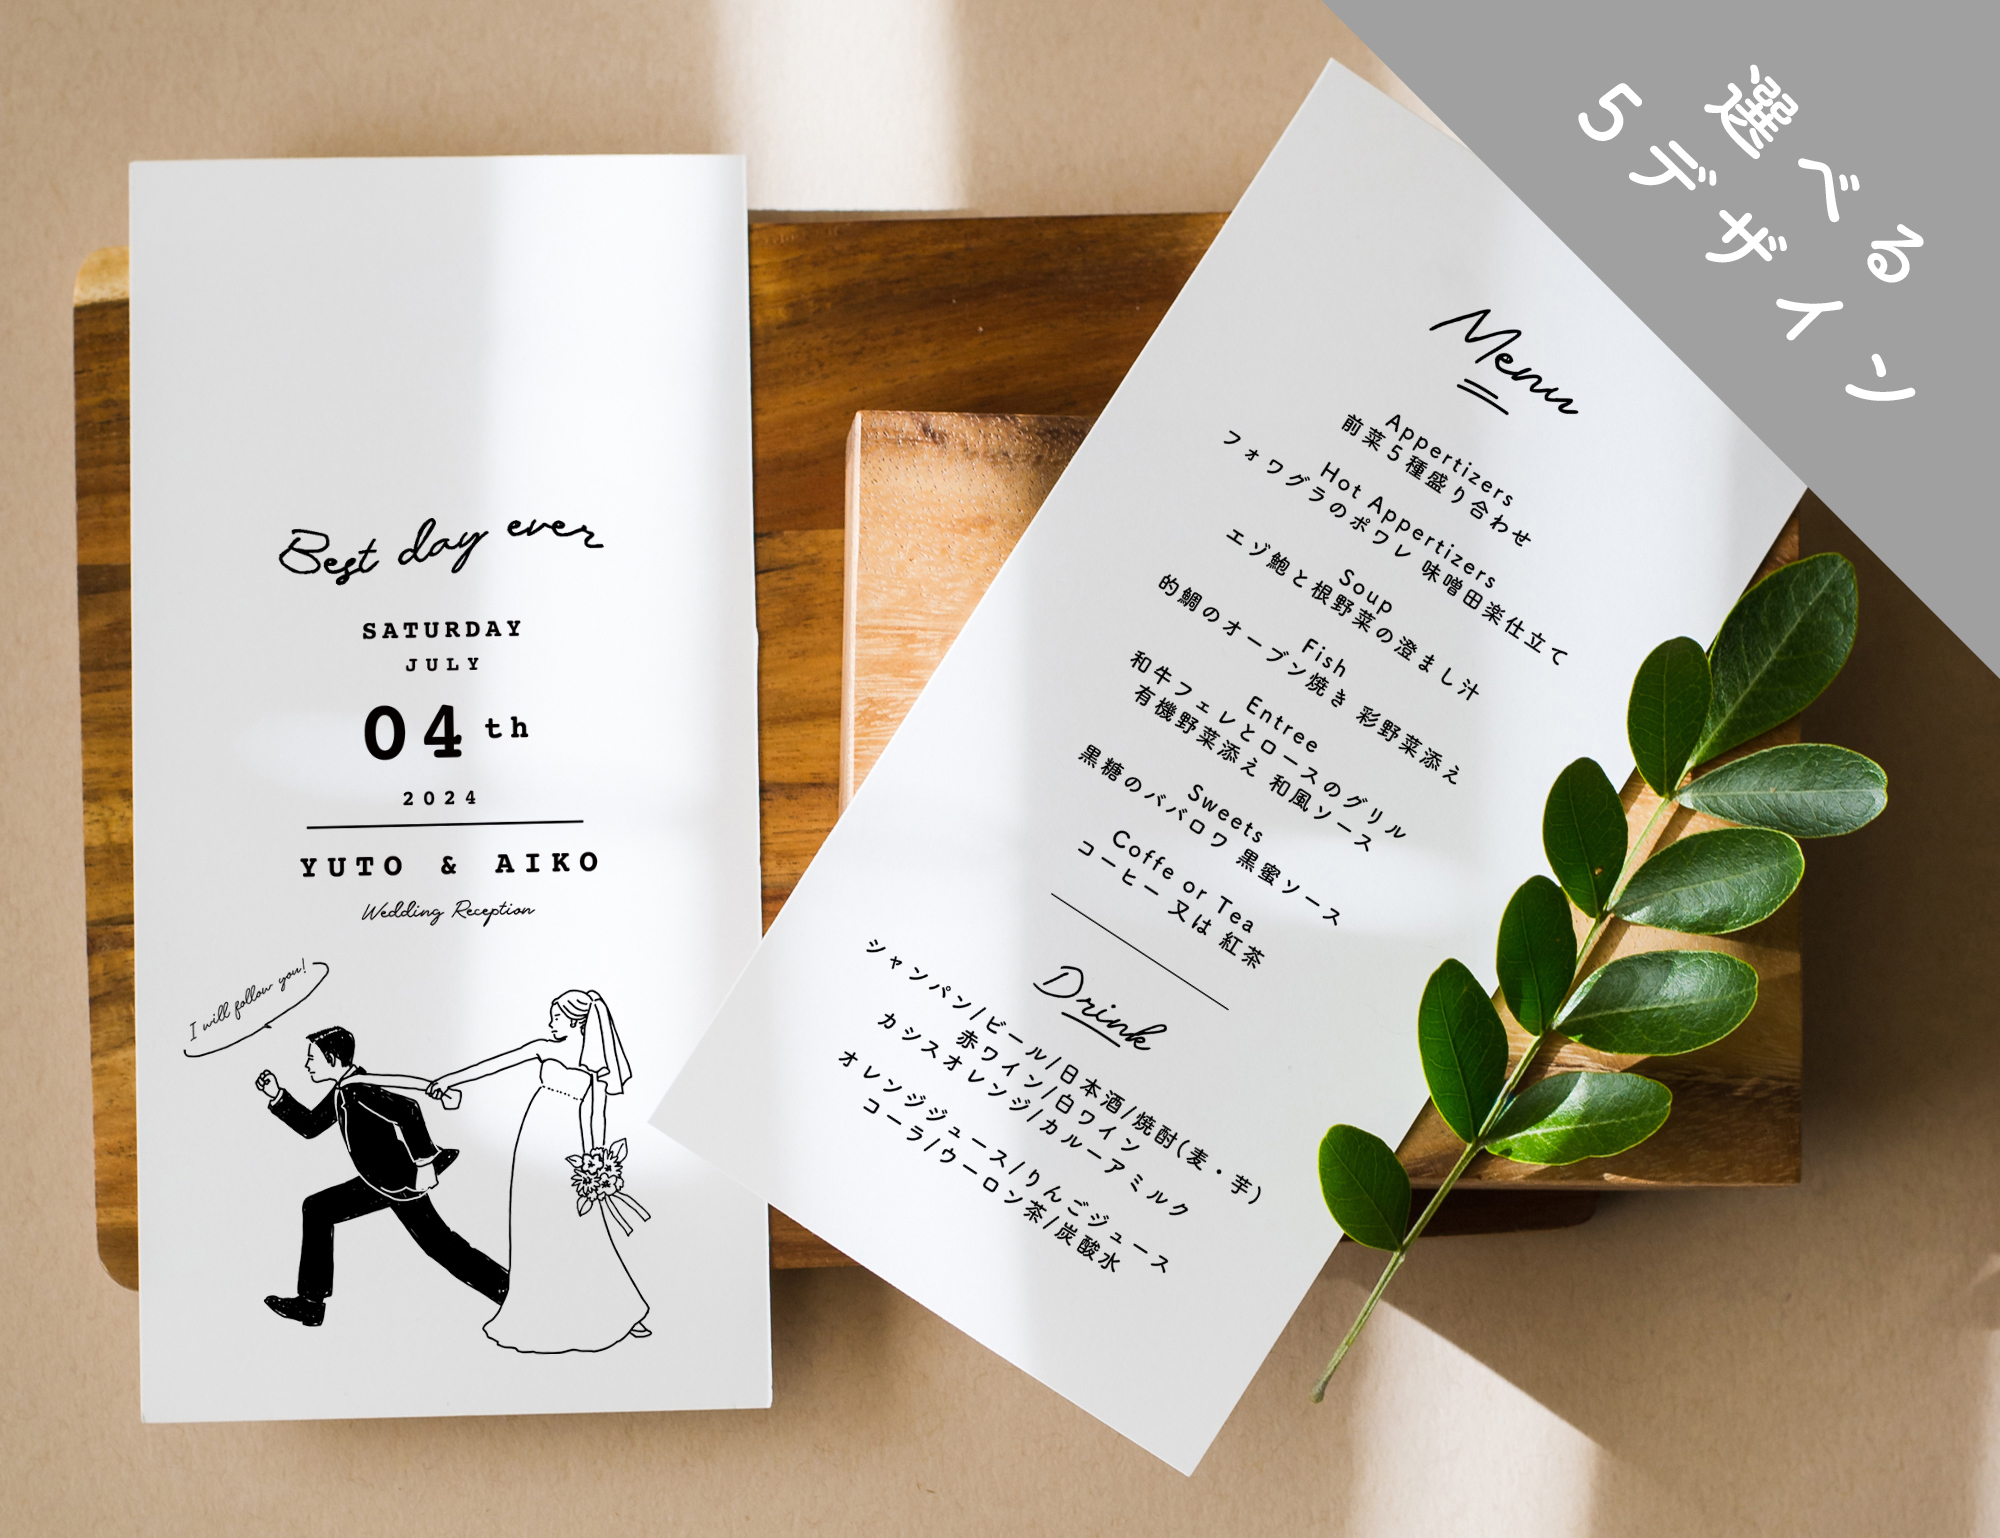 席次表 179円/部【Bride&Groom】│ウェディング 結婚式 プロフィールブック DIY store PBW